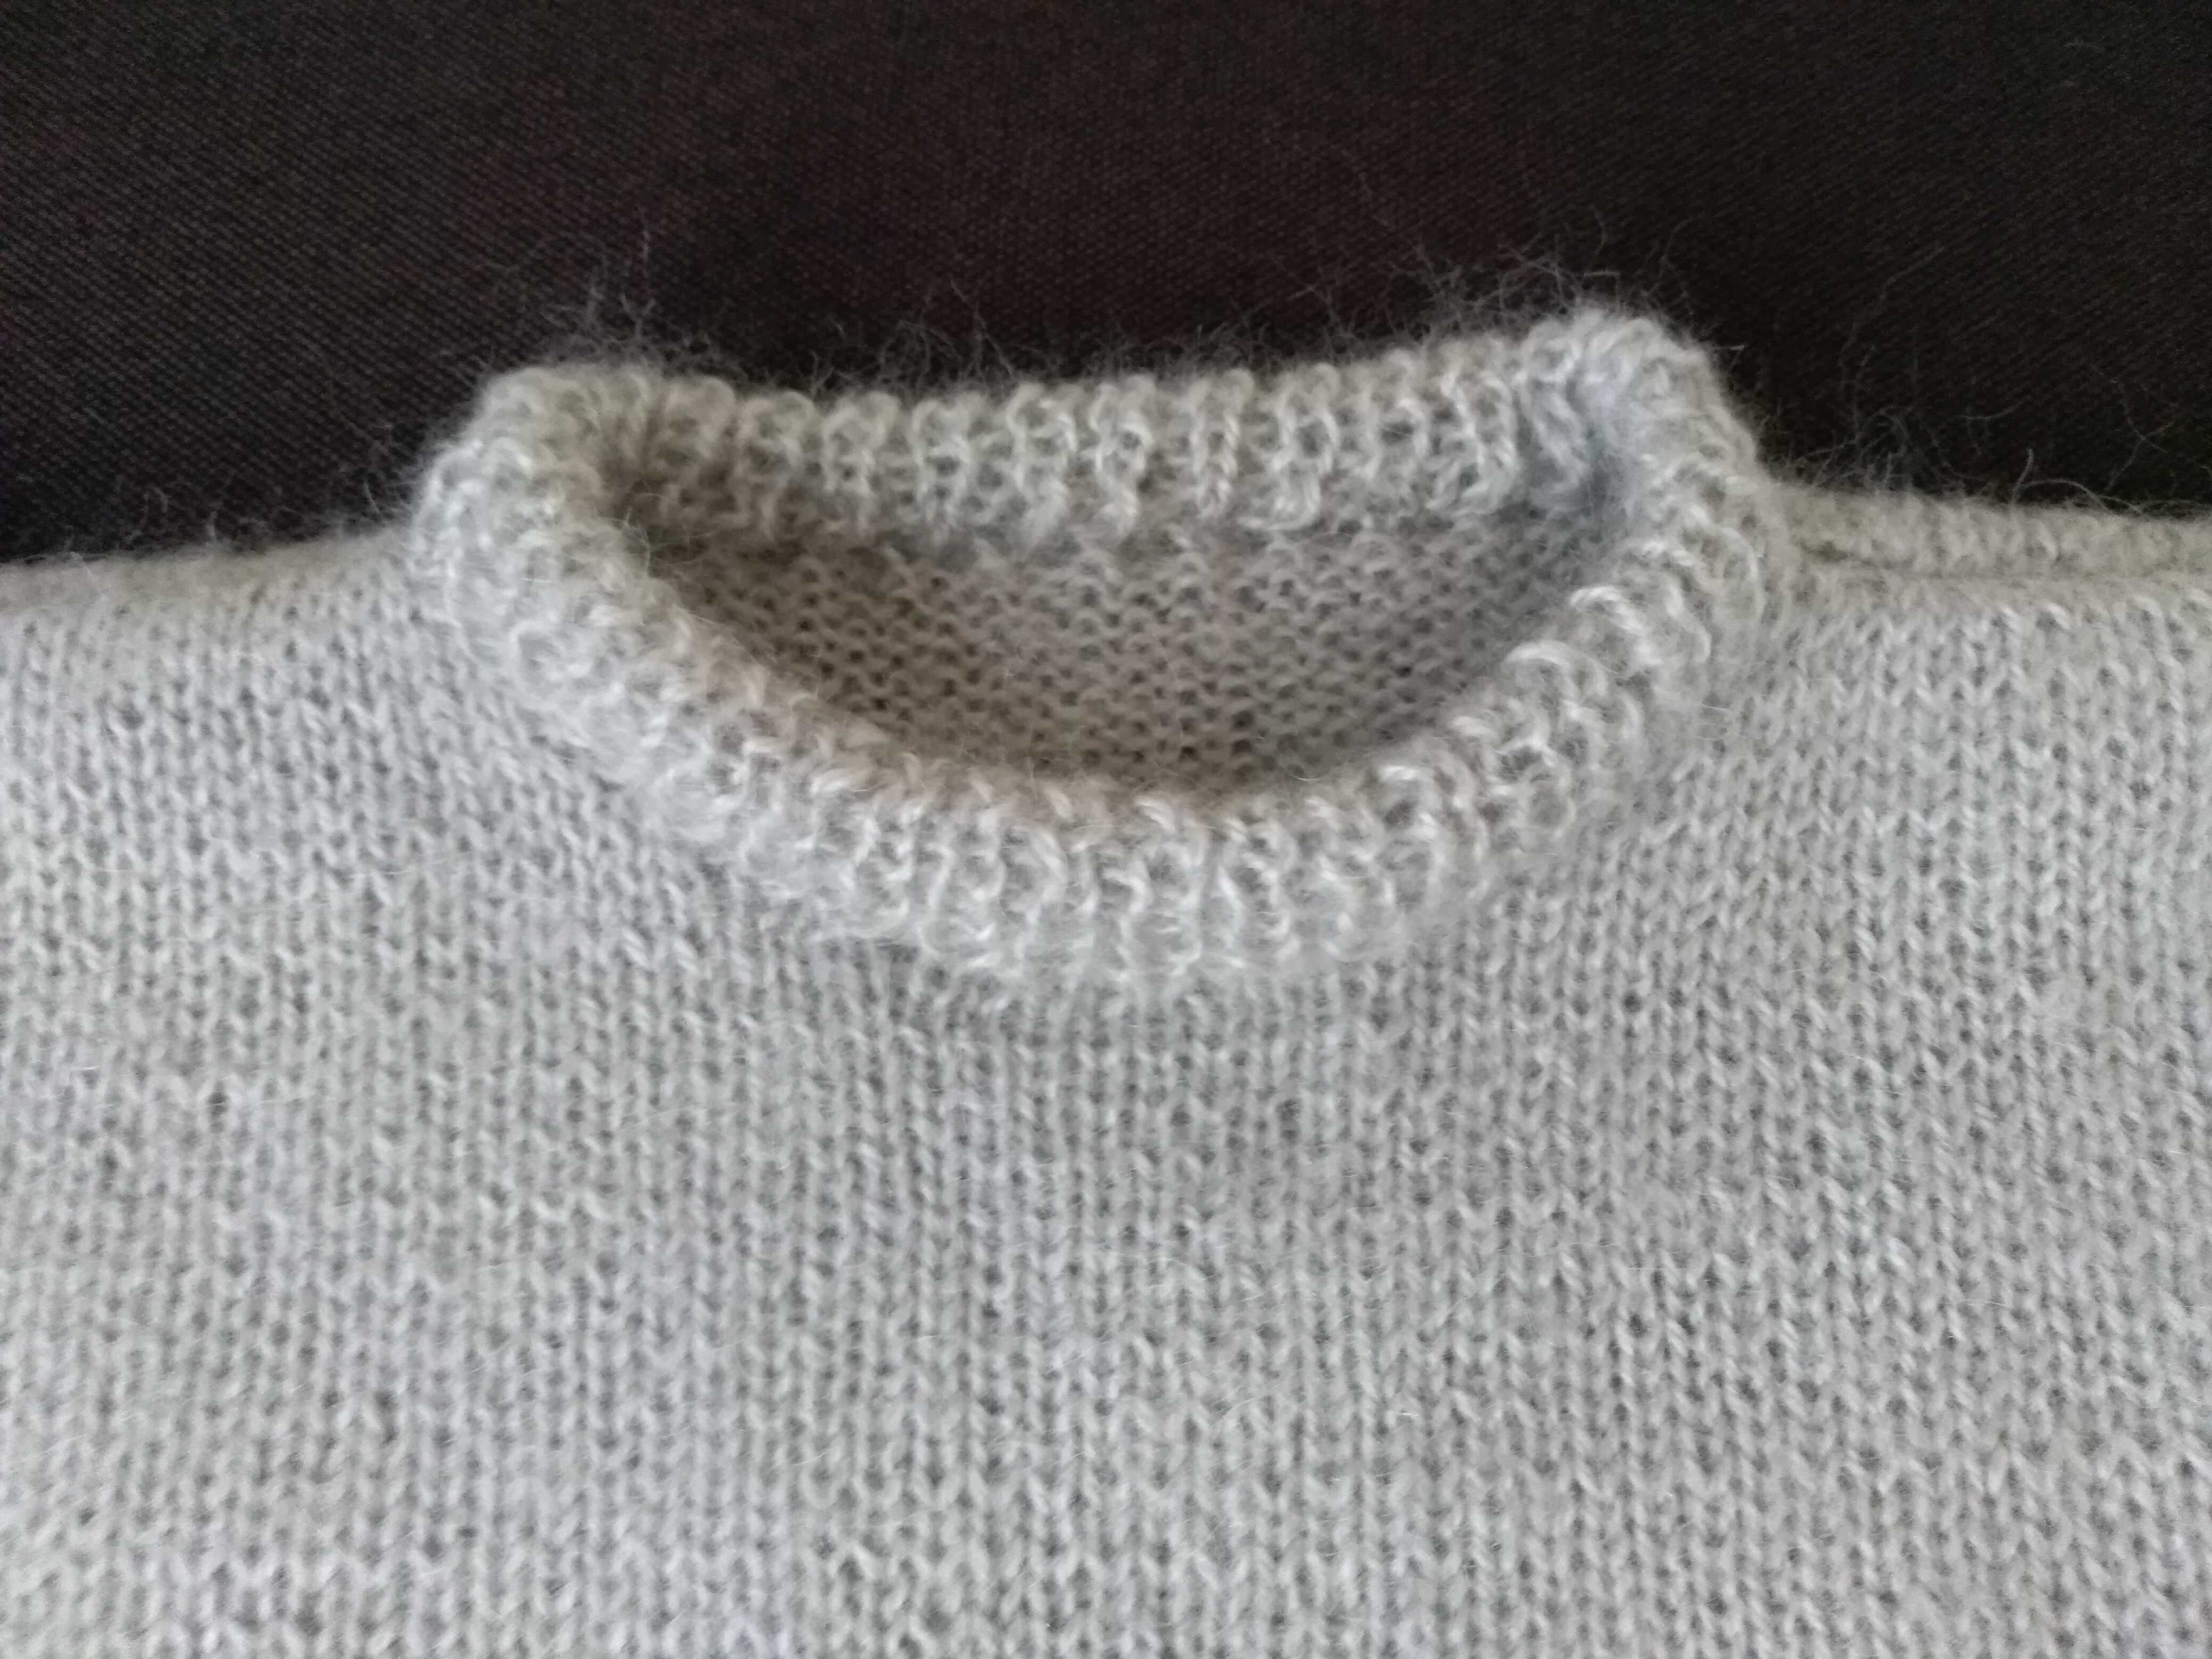 Nowy sweter ręcznie robiony z włóczki moherowej jasnoszary unisex